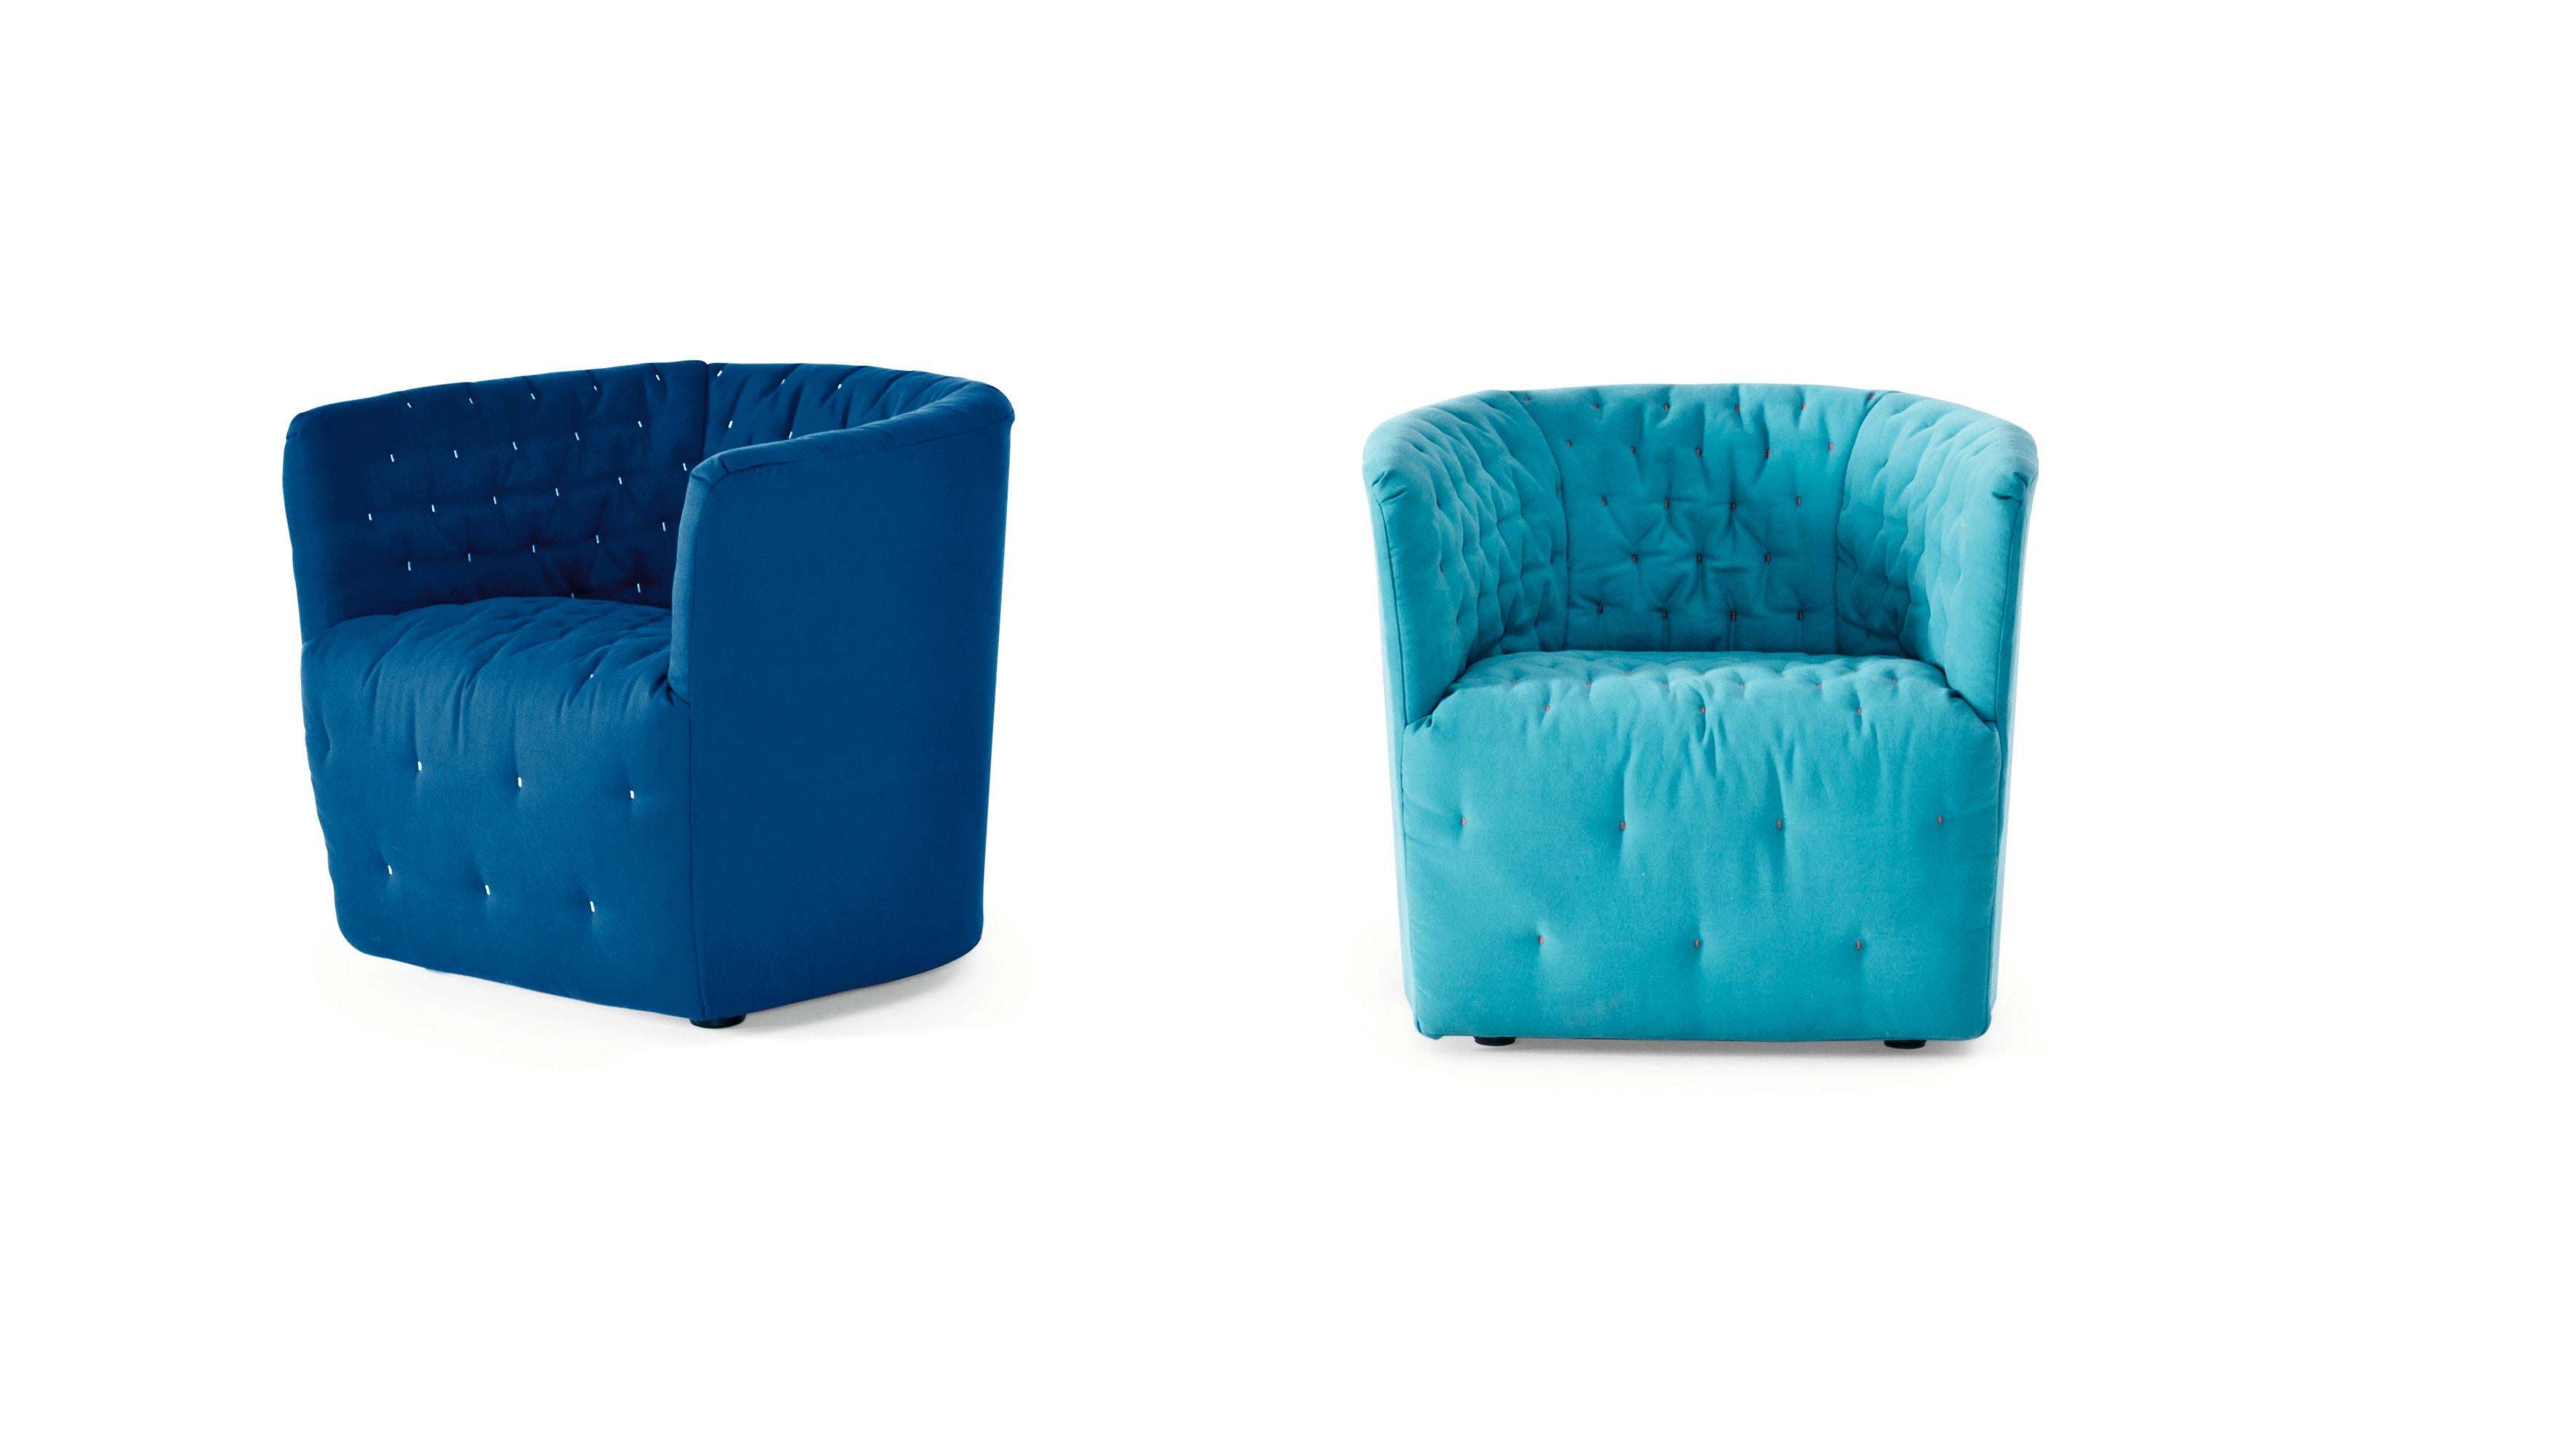 Der hübsche Sessel Amélie lässt an die französische Haute Couture denken. Die spezielle Steppung, die die inneren Rundungen hervorhebt, wird von Hand nach einem nicht zufälligen Muster ausgeführt. Amélie ist kompakt, aber dennoch von großer